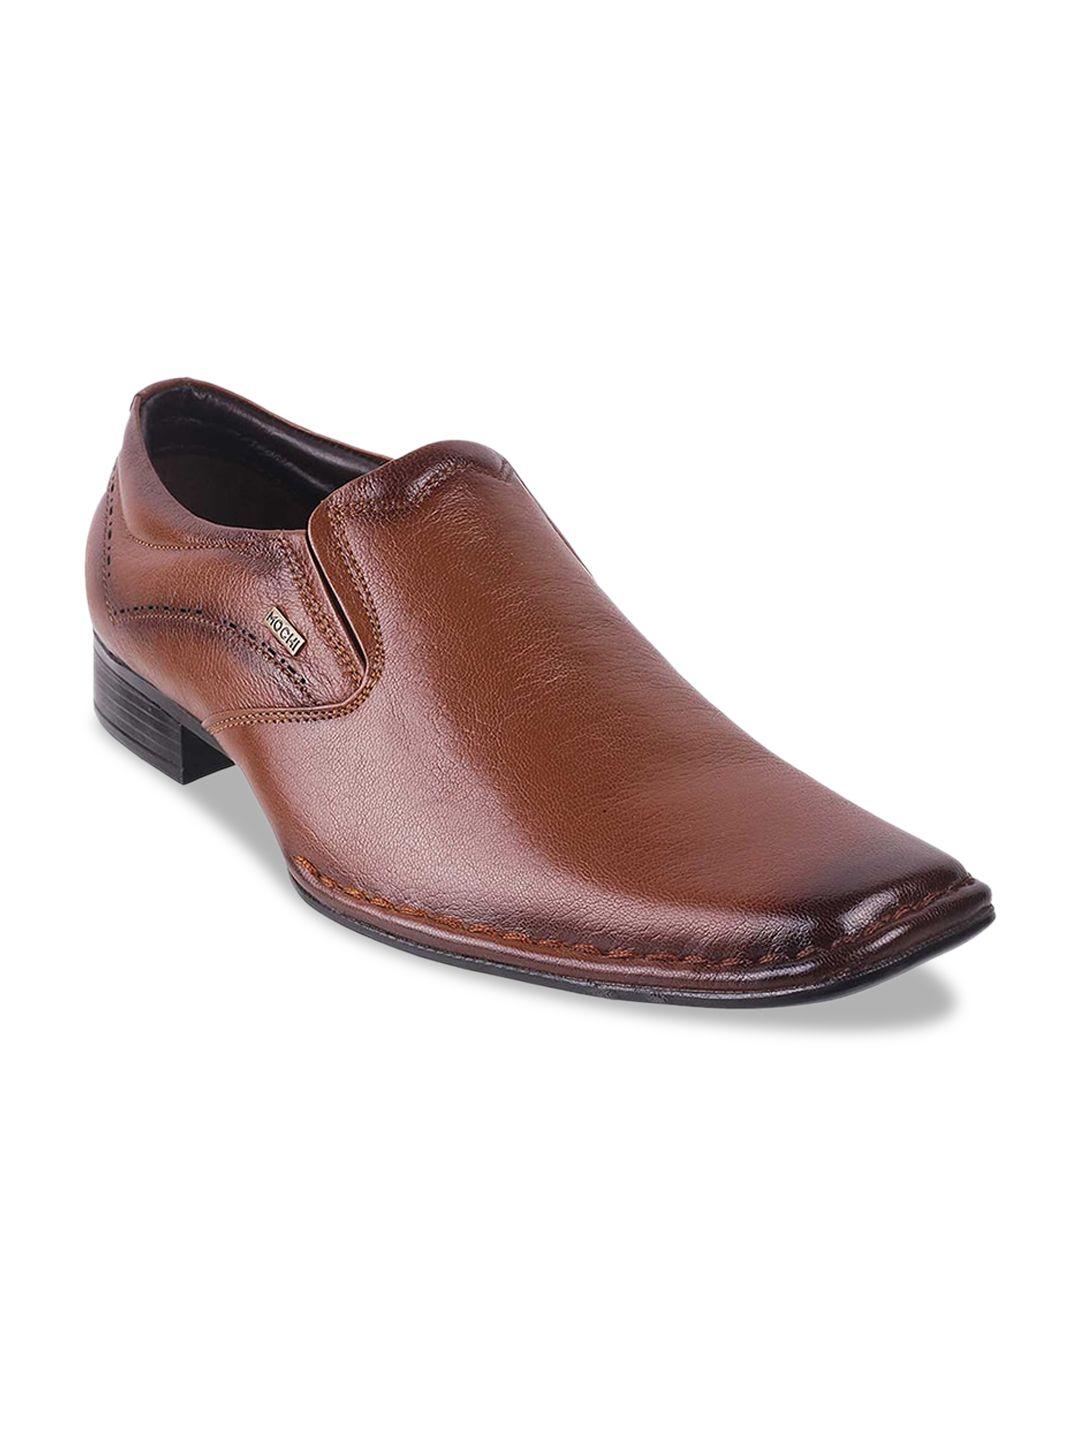 mochi men brown solid leather formal slip-ons